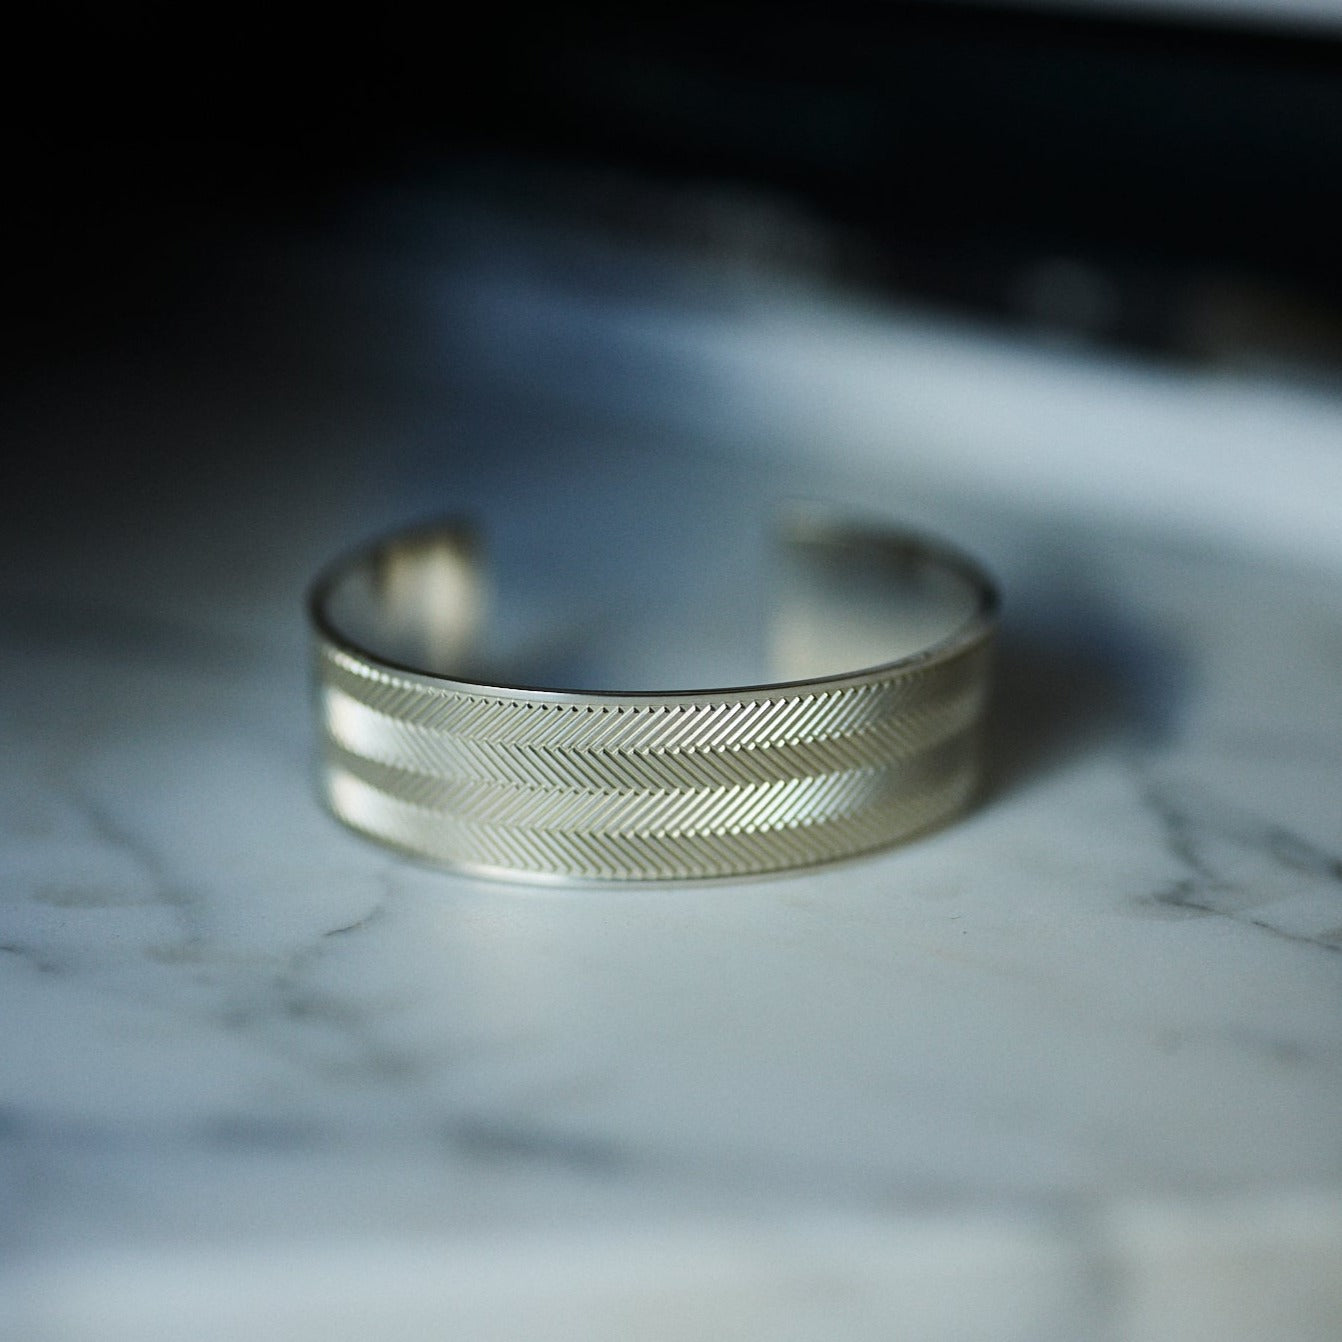 Silver Bracelet with Herringbone Engraving - Wide